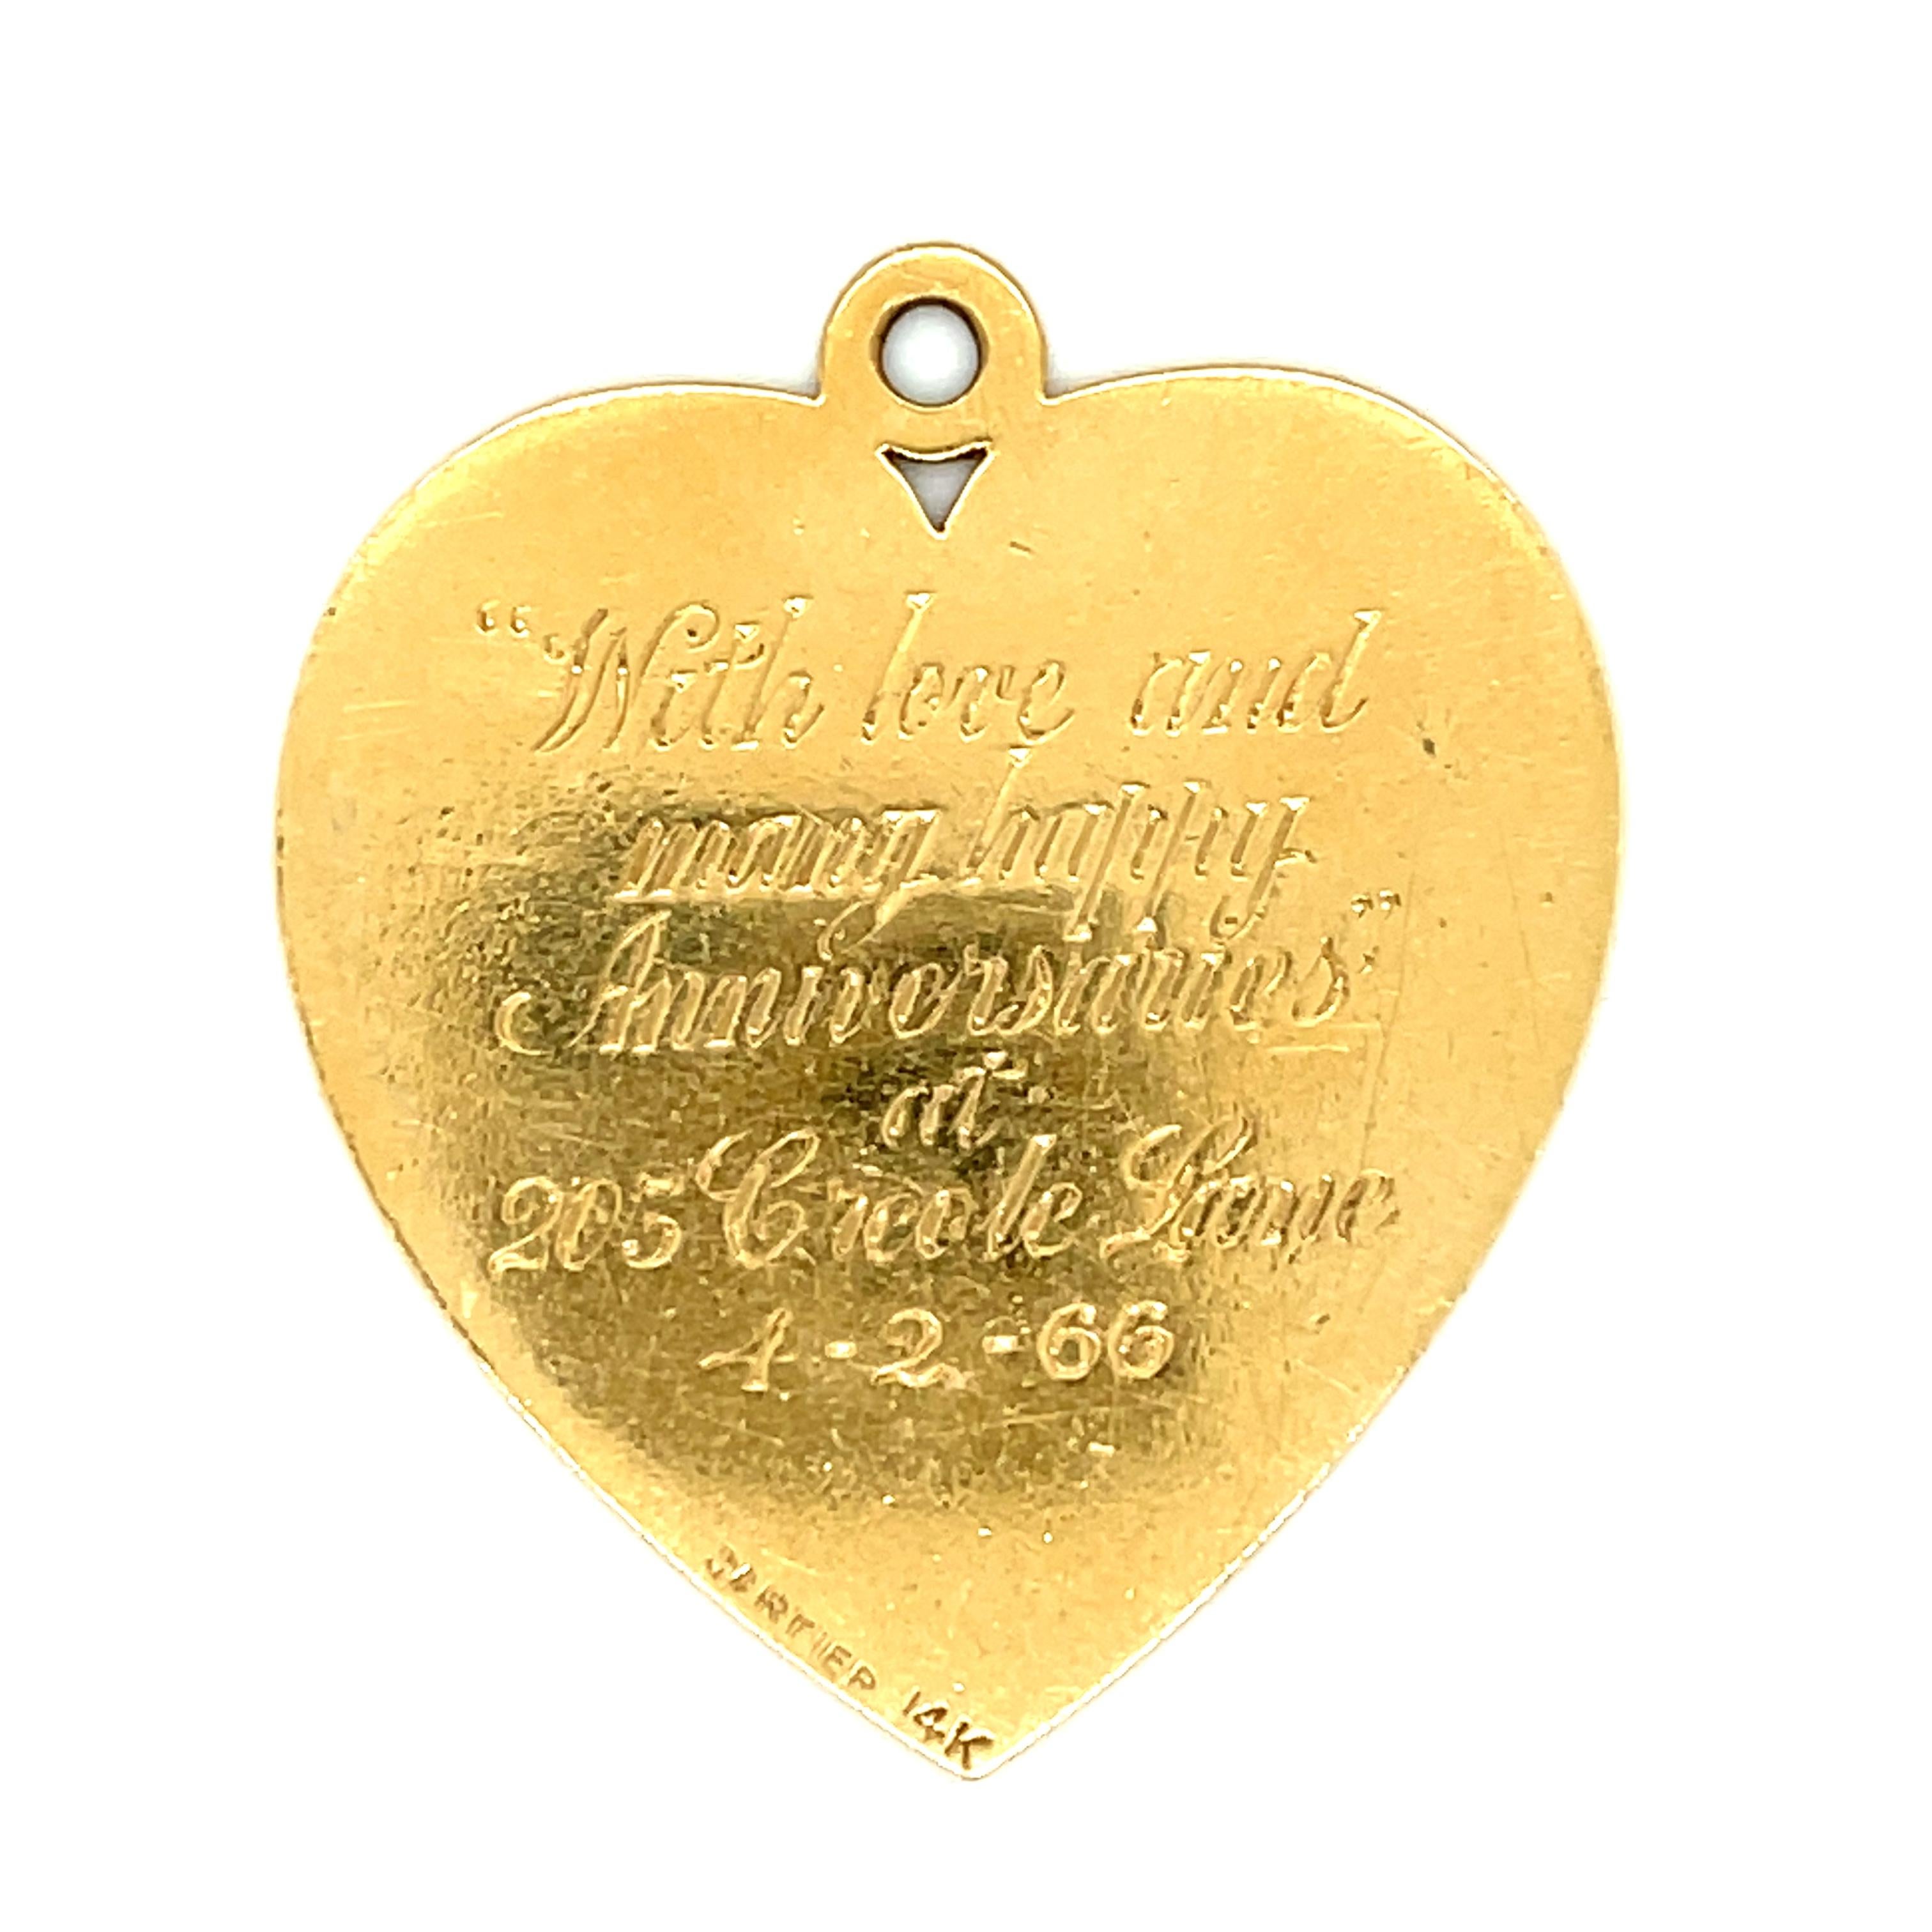 Ein hübsches 14k Gelbgold Herz Charme von Cartier mit einer eingravierten Heimat auf der Vorderseite des Herzens, von 1966. Der Charme hat ein detailliert eingraviertes Haus umgeben von Bäumen auf der Vorderseite. Die Rückseite trägt die Inschrift